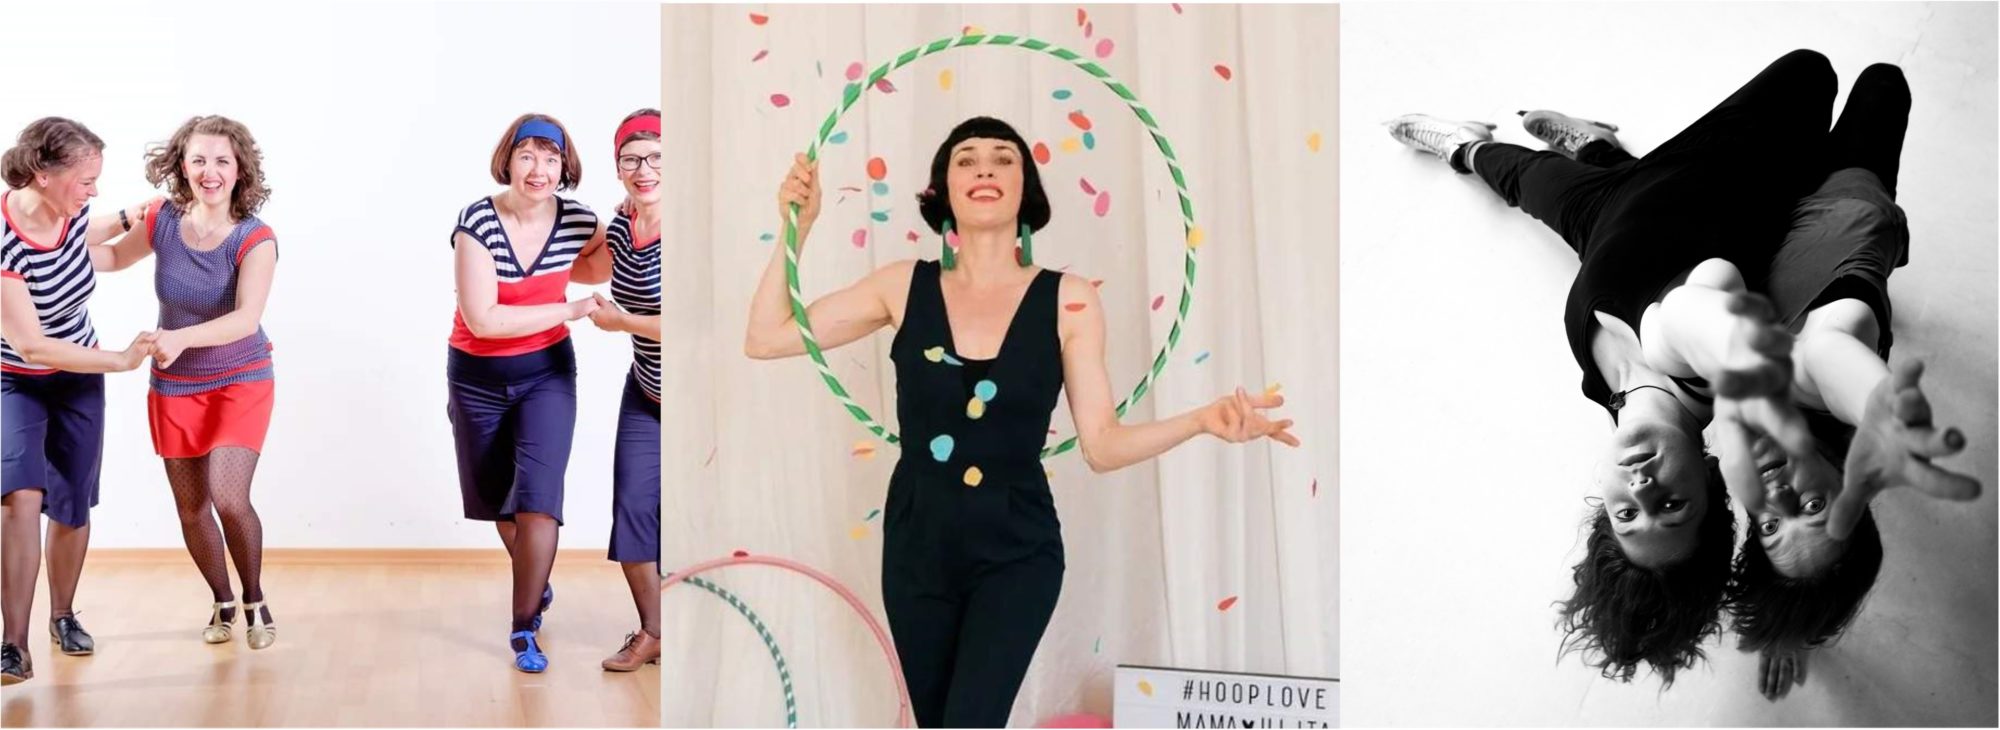 3 Fotos nebeneinander, Swingtanz-Frauen, eine Frau mit Hoolahoop-Reifen und zwei Eis-Tänzerinnen